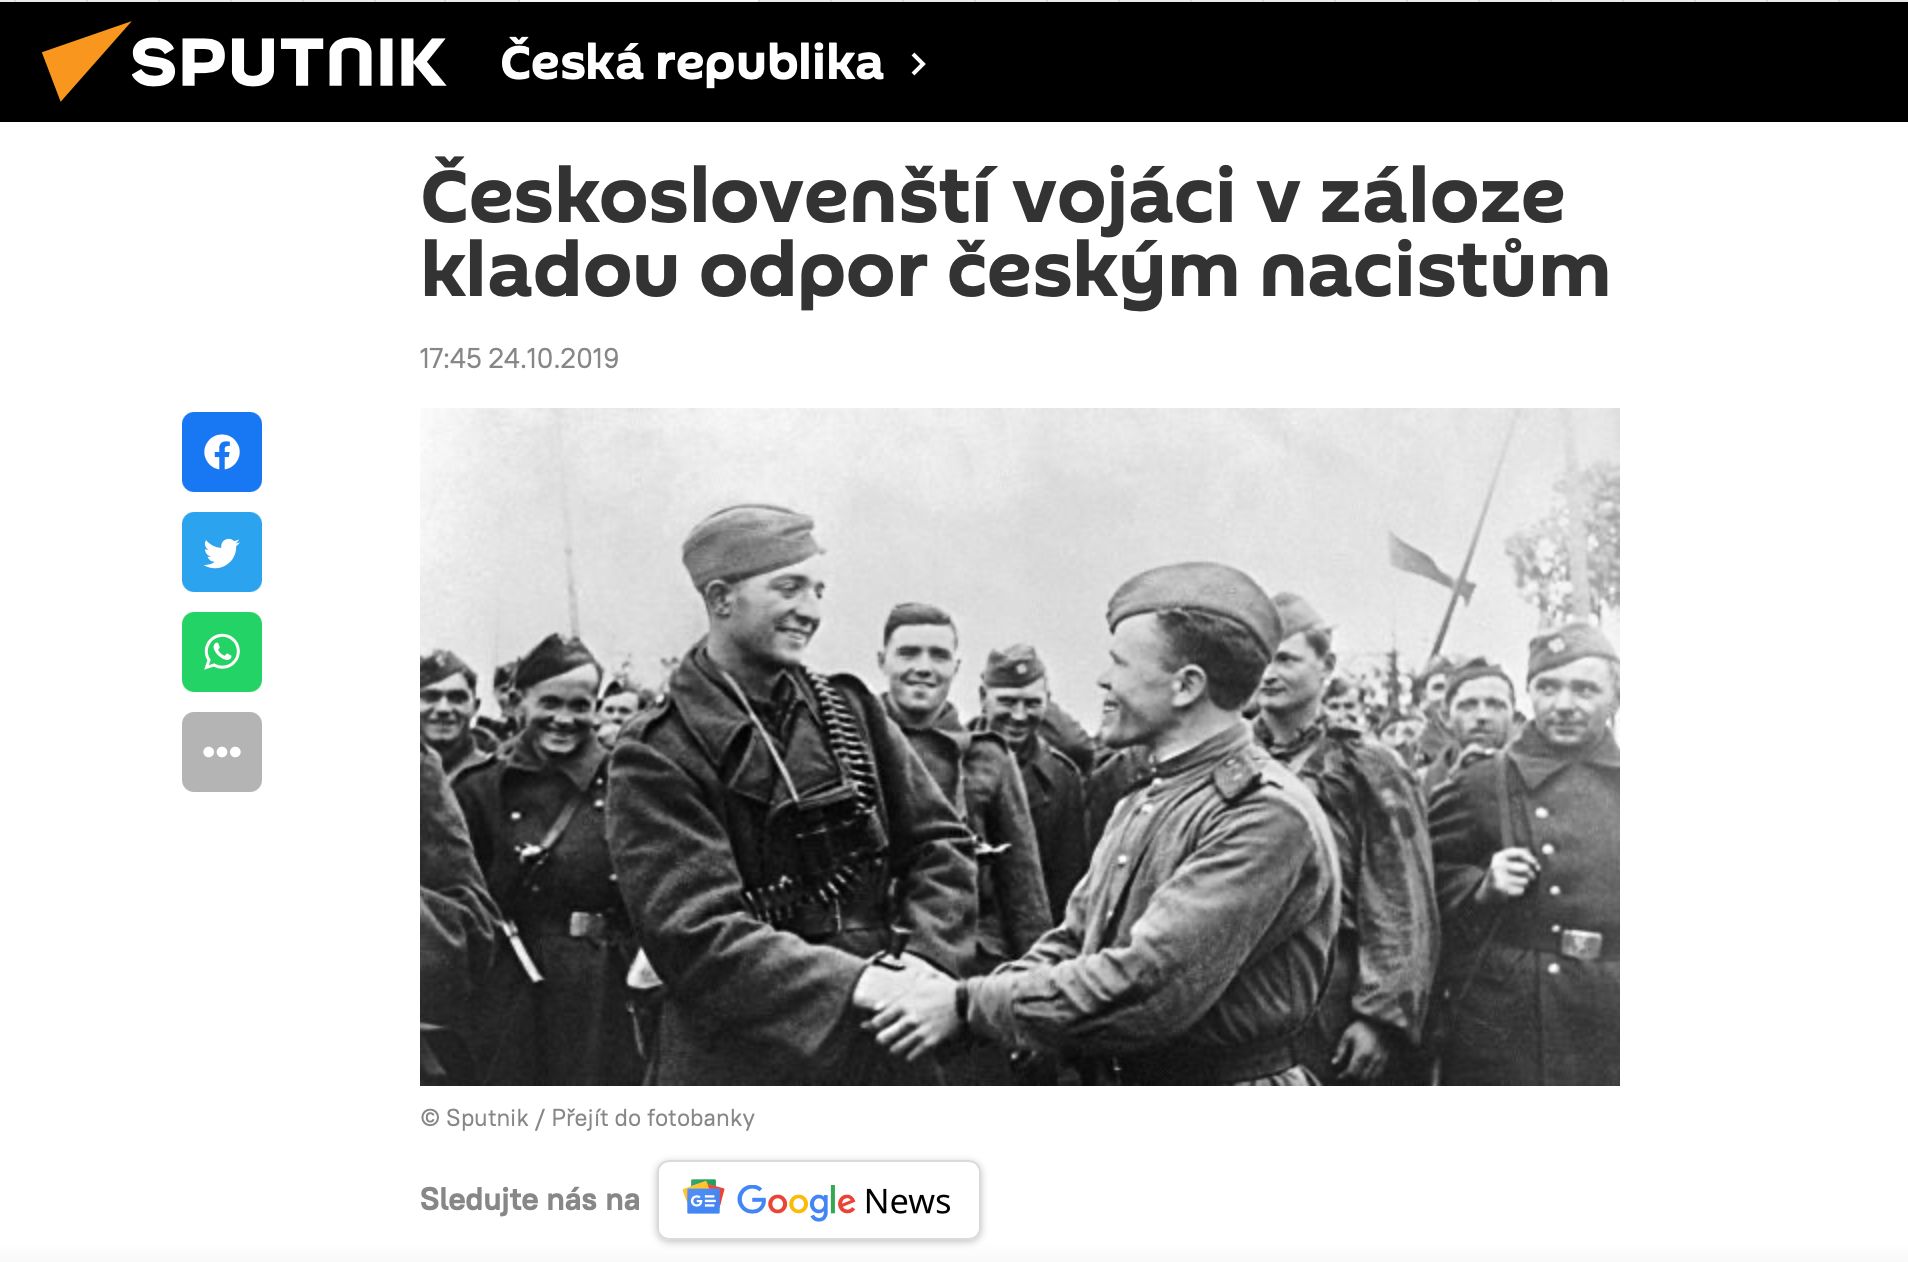 Českoslovenští vojáci v záloze na propagandistickém webu Sputnik.